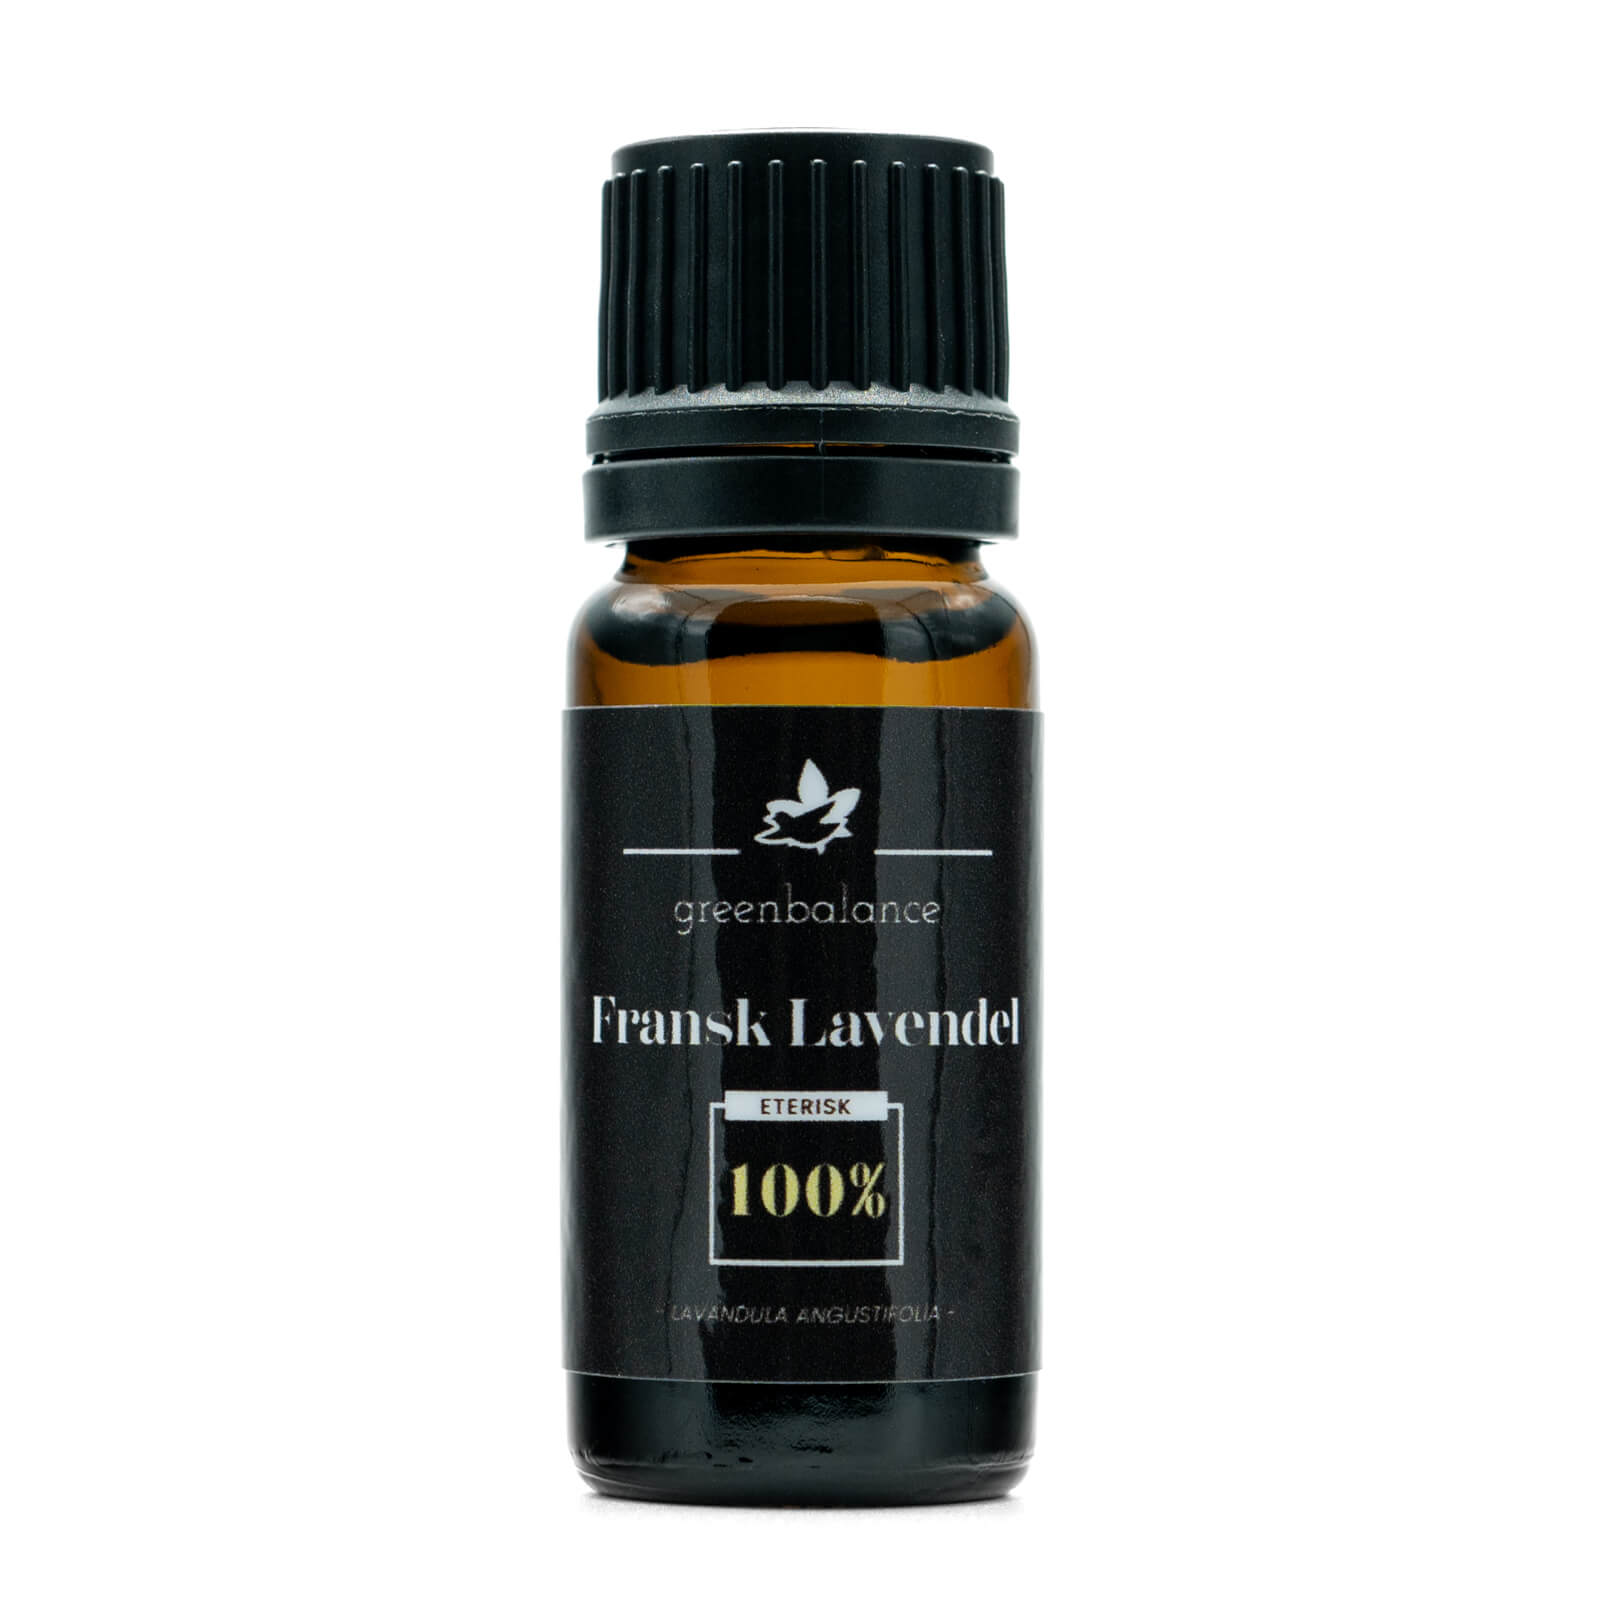 Greenbalance Ekologisk Eterisk Fransk Lavendelolja (100%) (Lavandula Angustifolia)